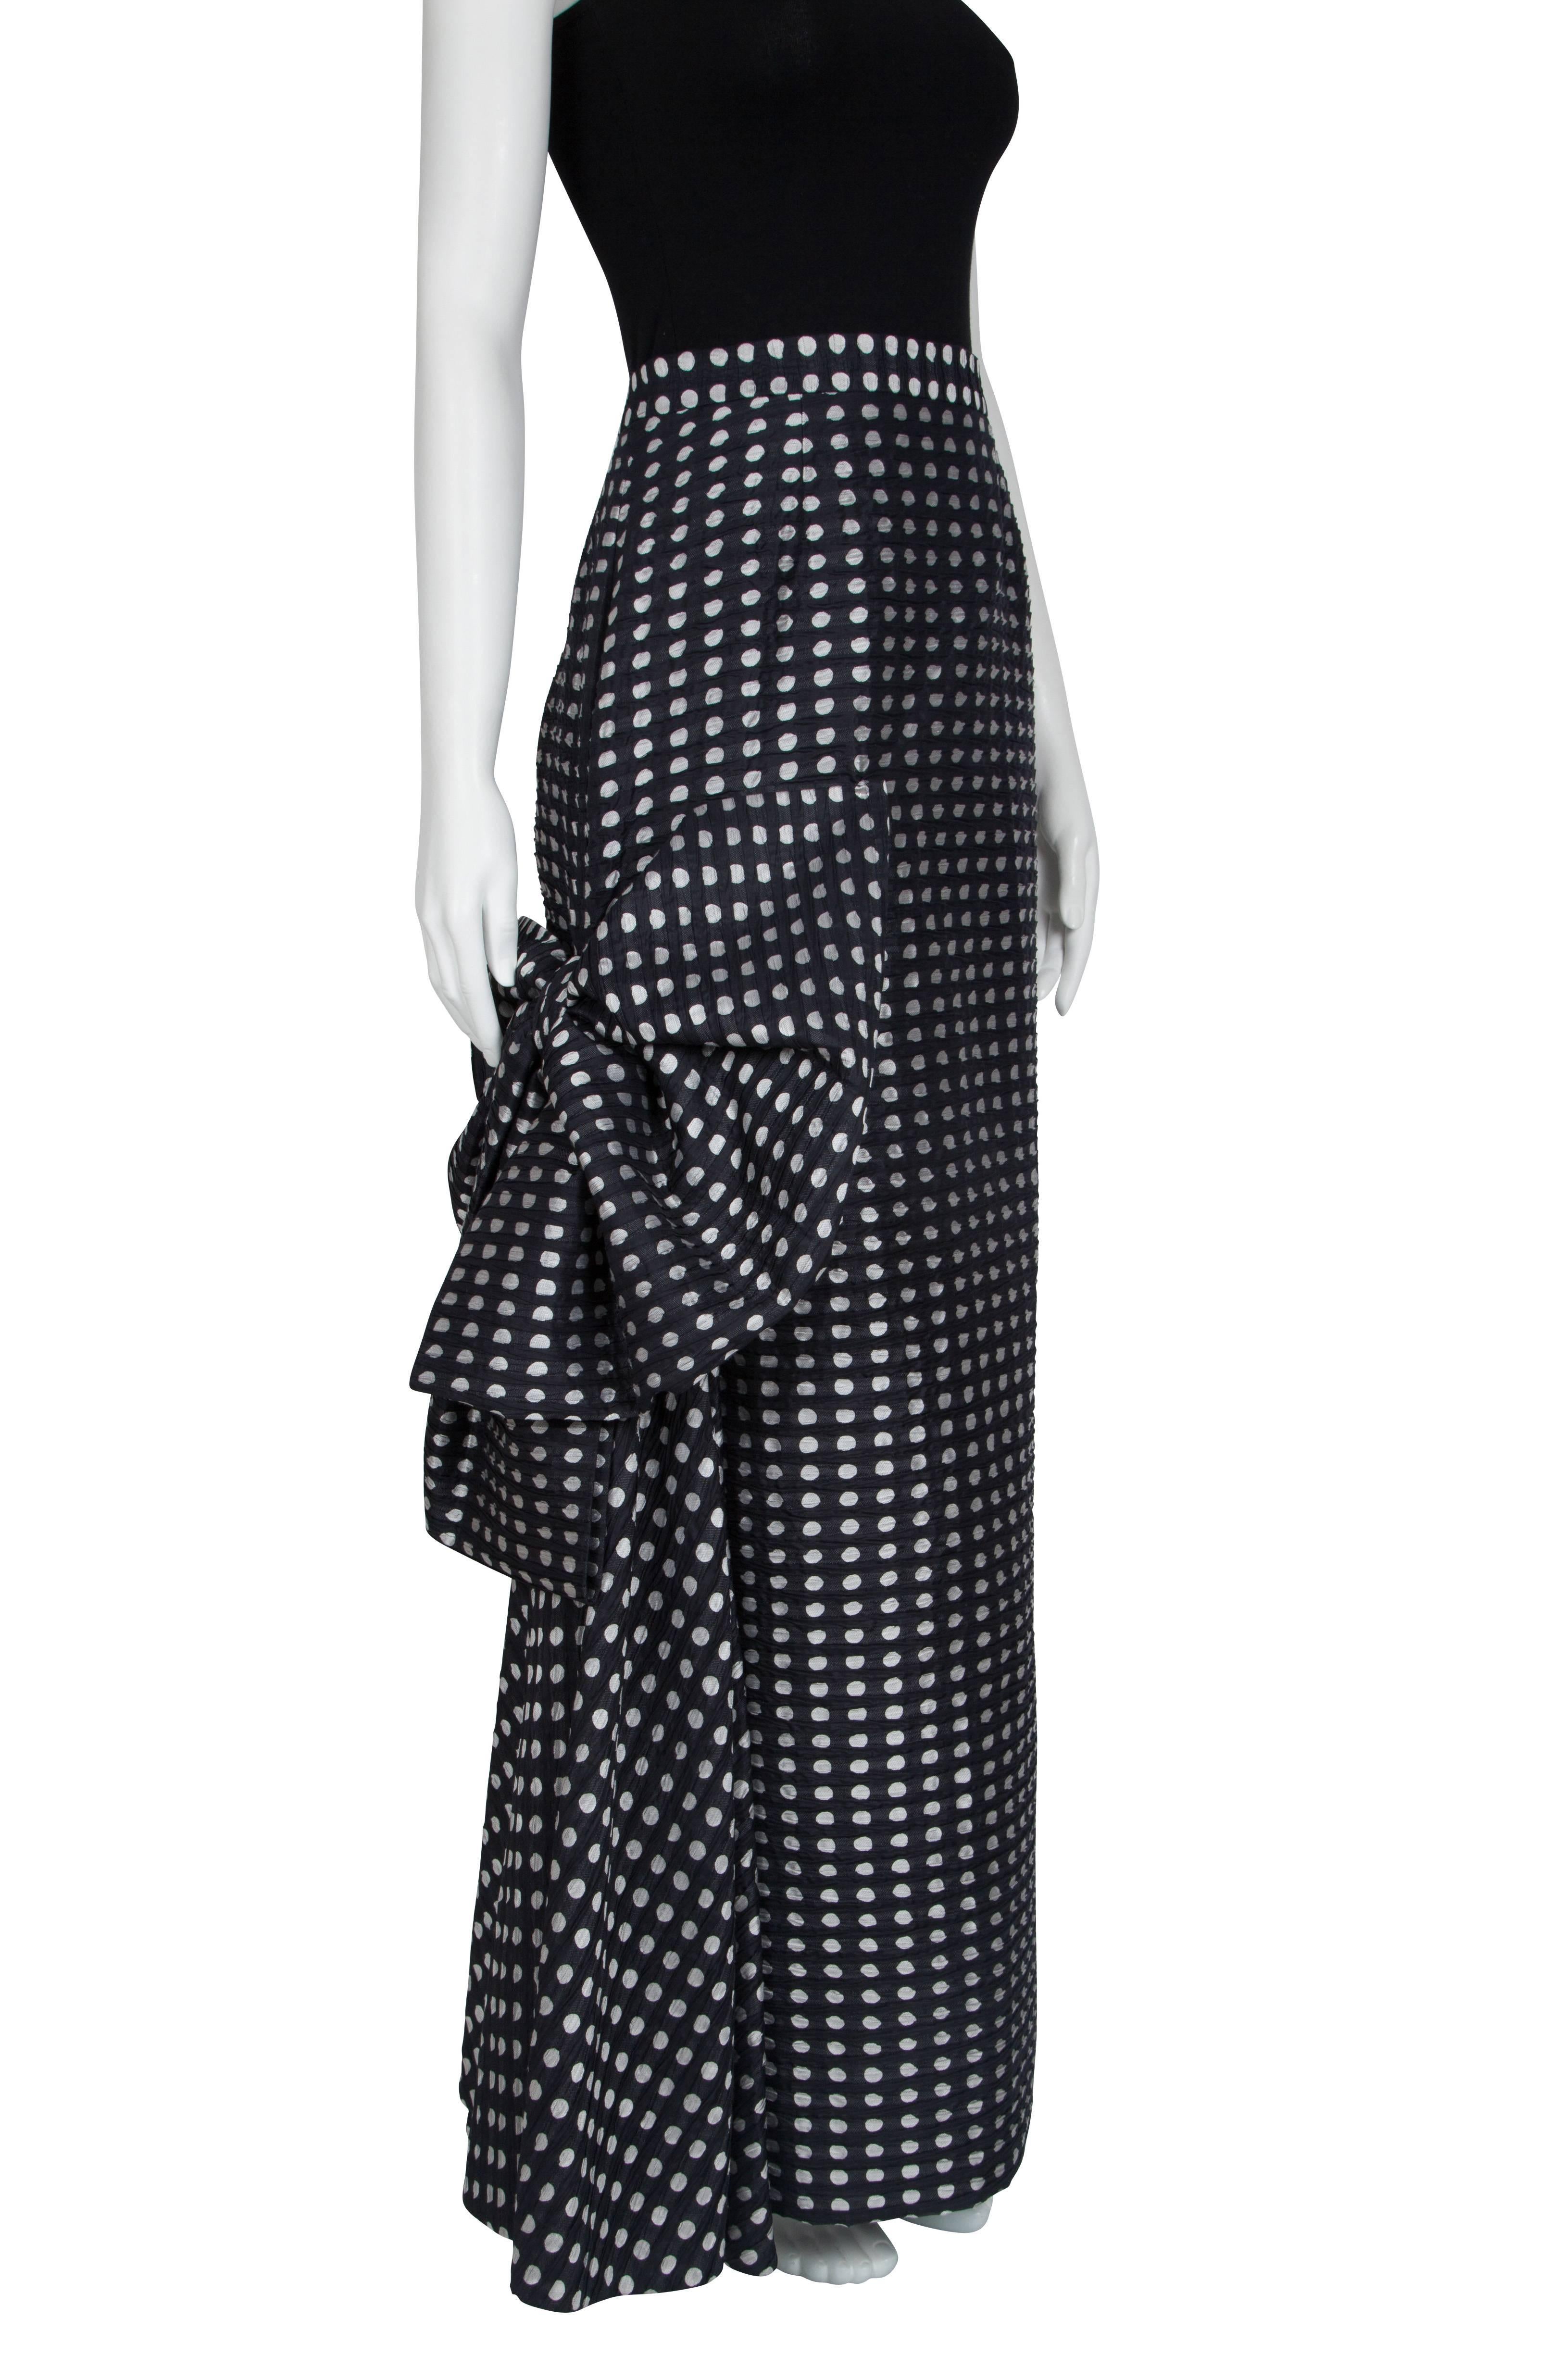 Women's 1980's Yves Saint Laurent Black Silk Polka Dot Skirt with Dramatic Bow